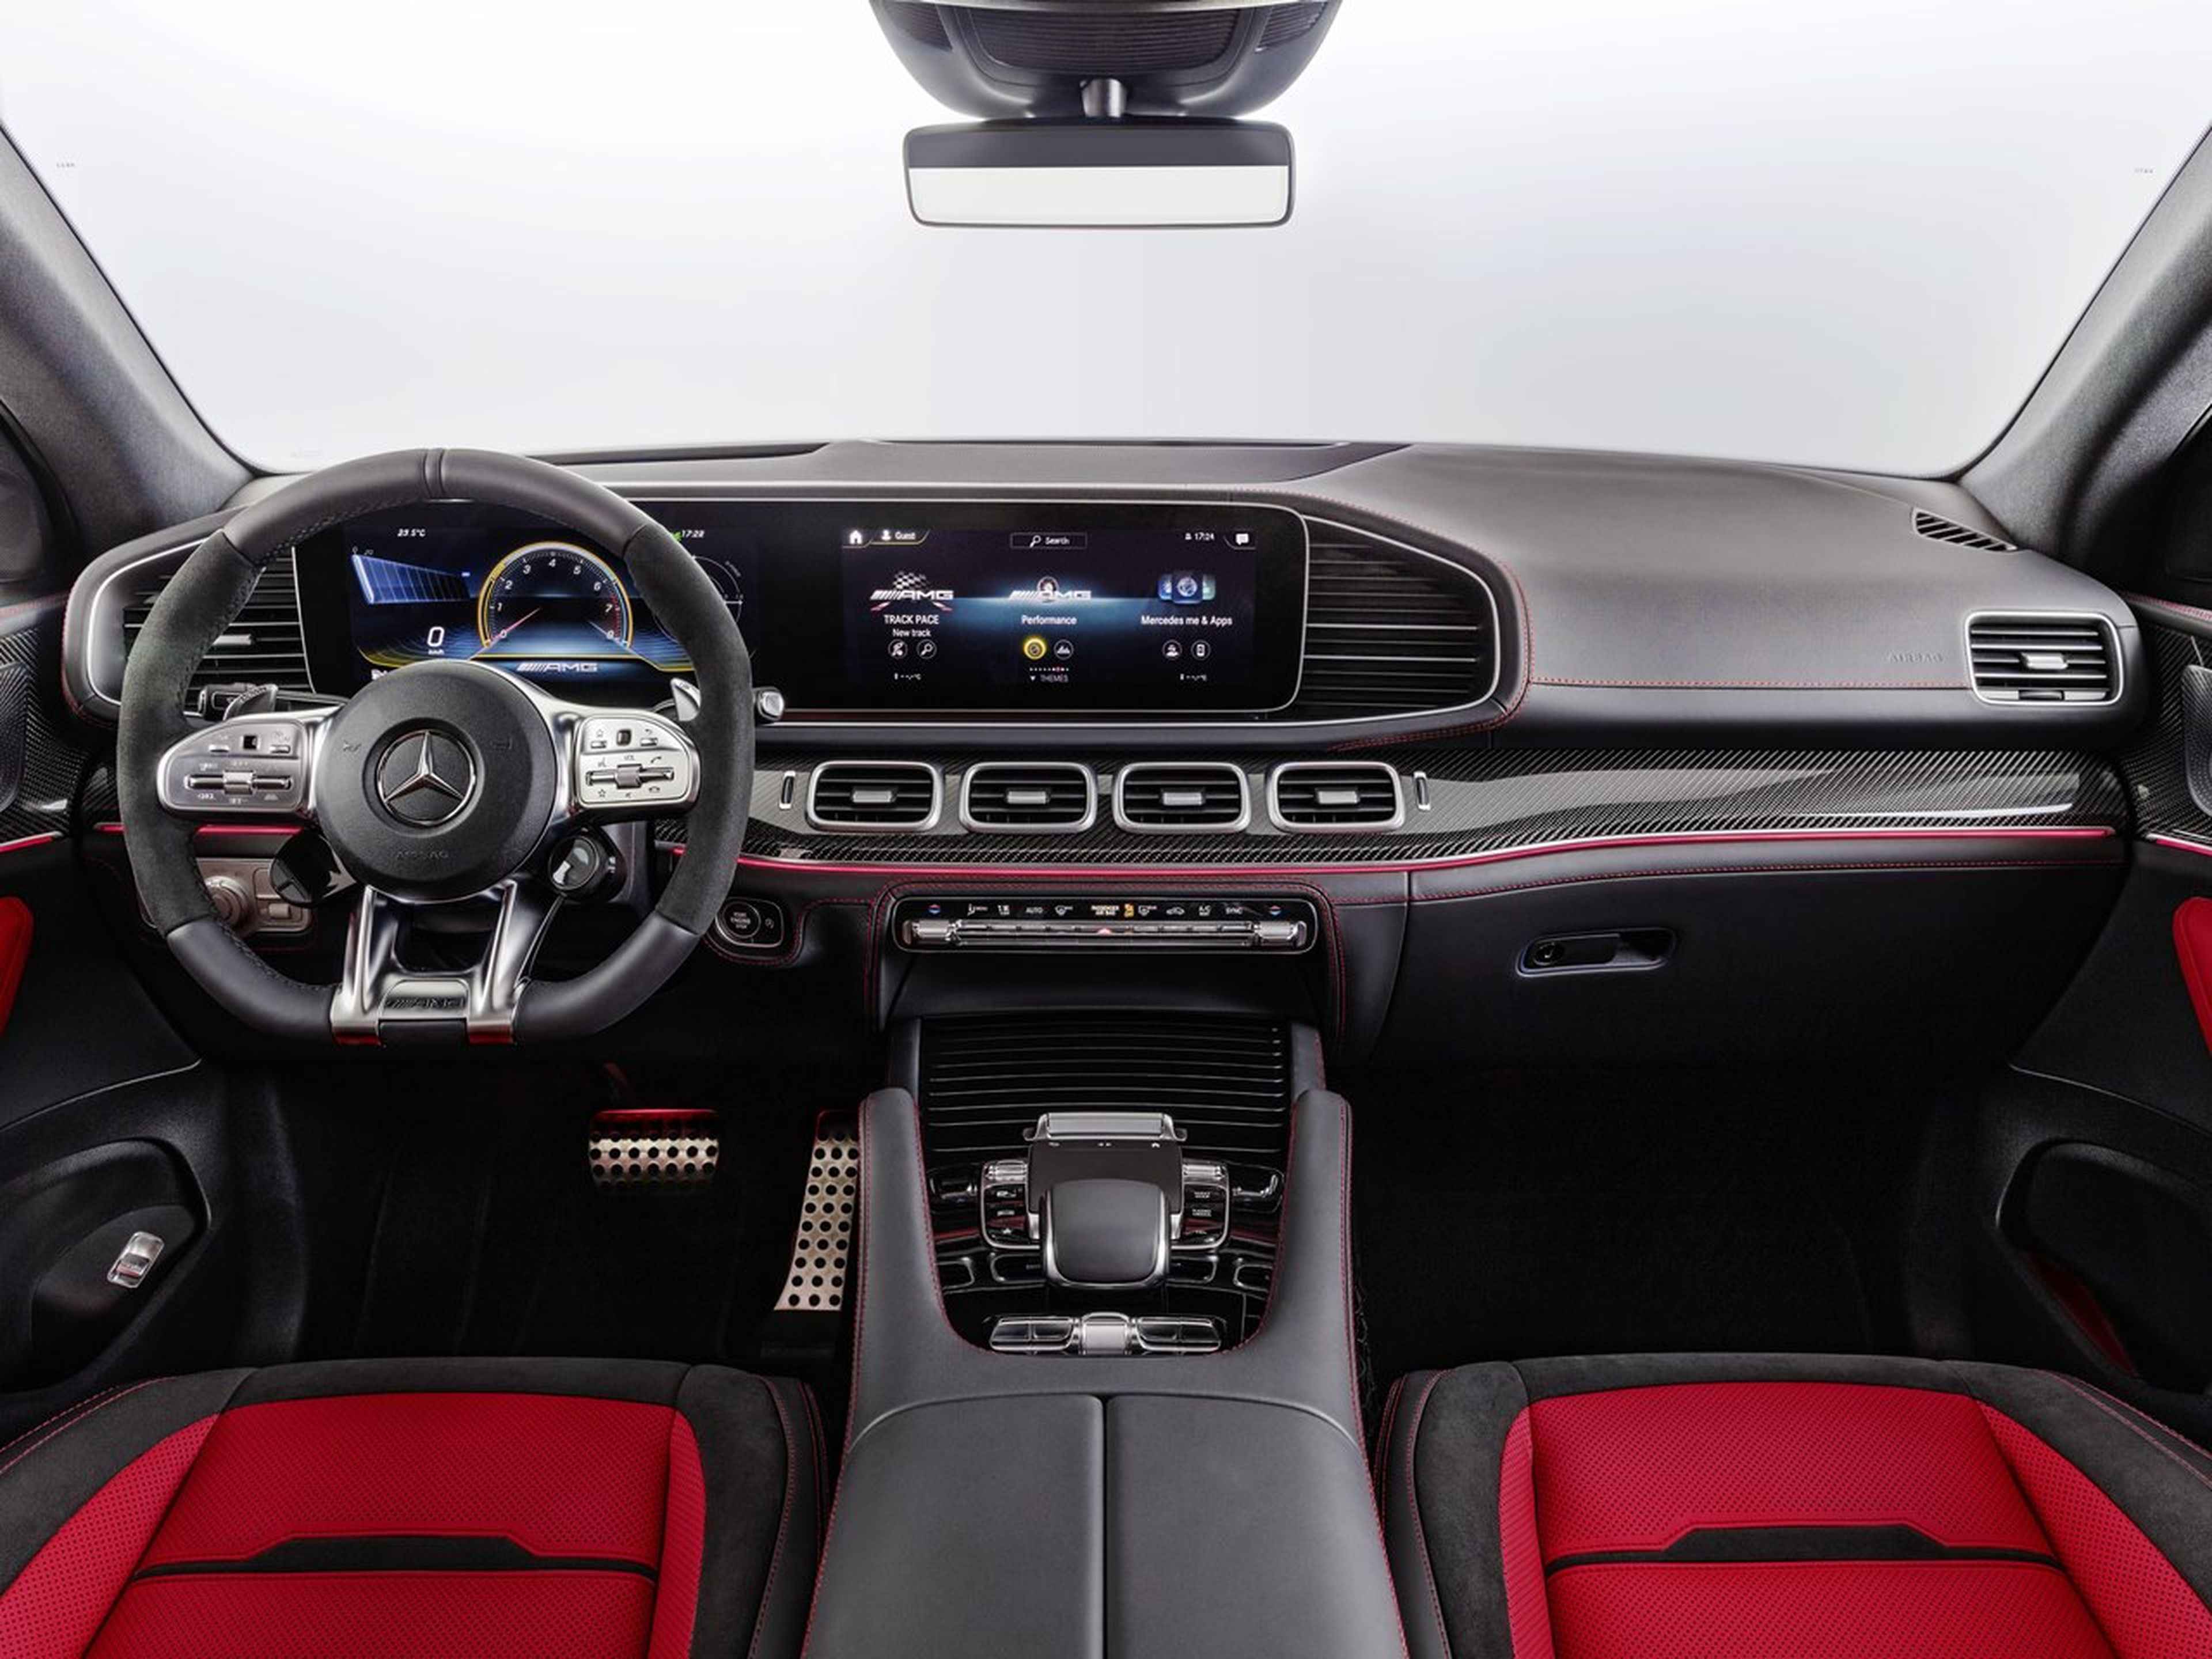 Mercedes-Benz GLE Coupé interior